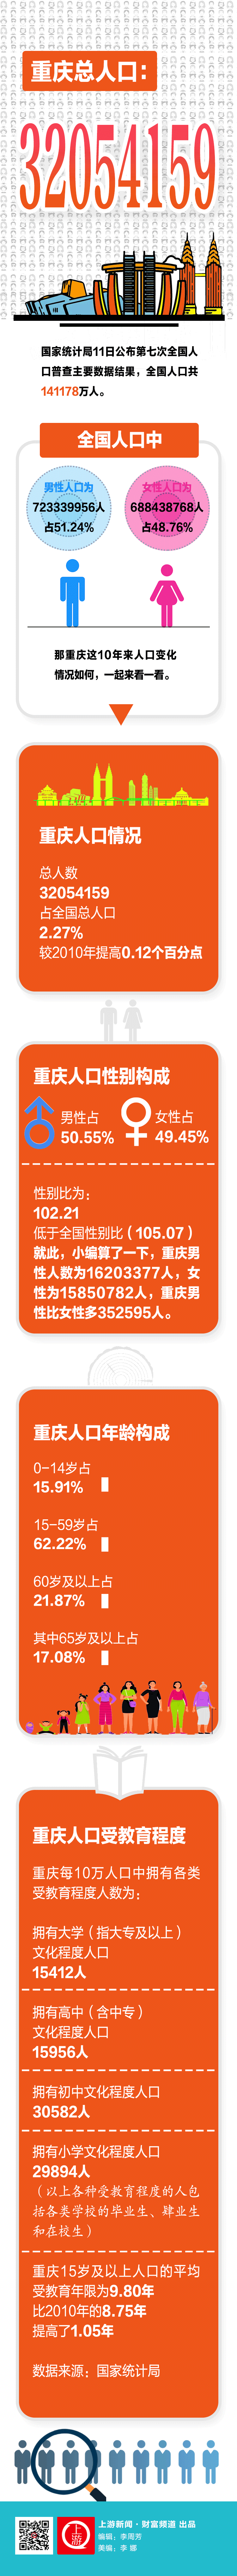 重庆人口111.gif